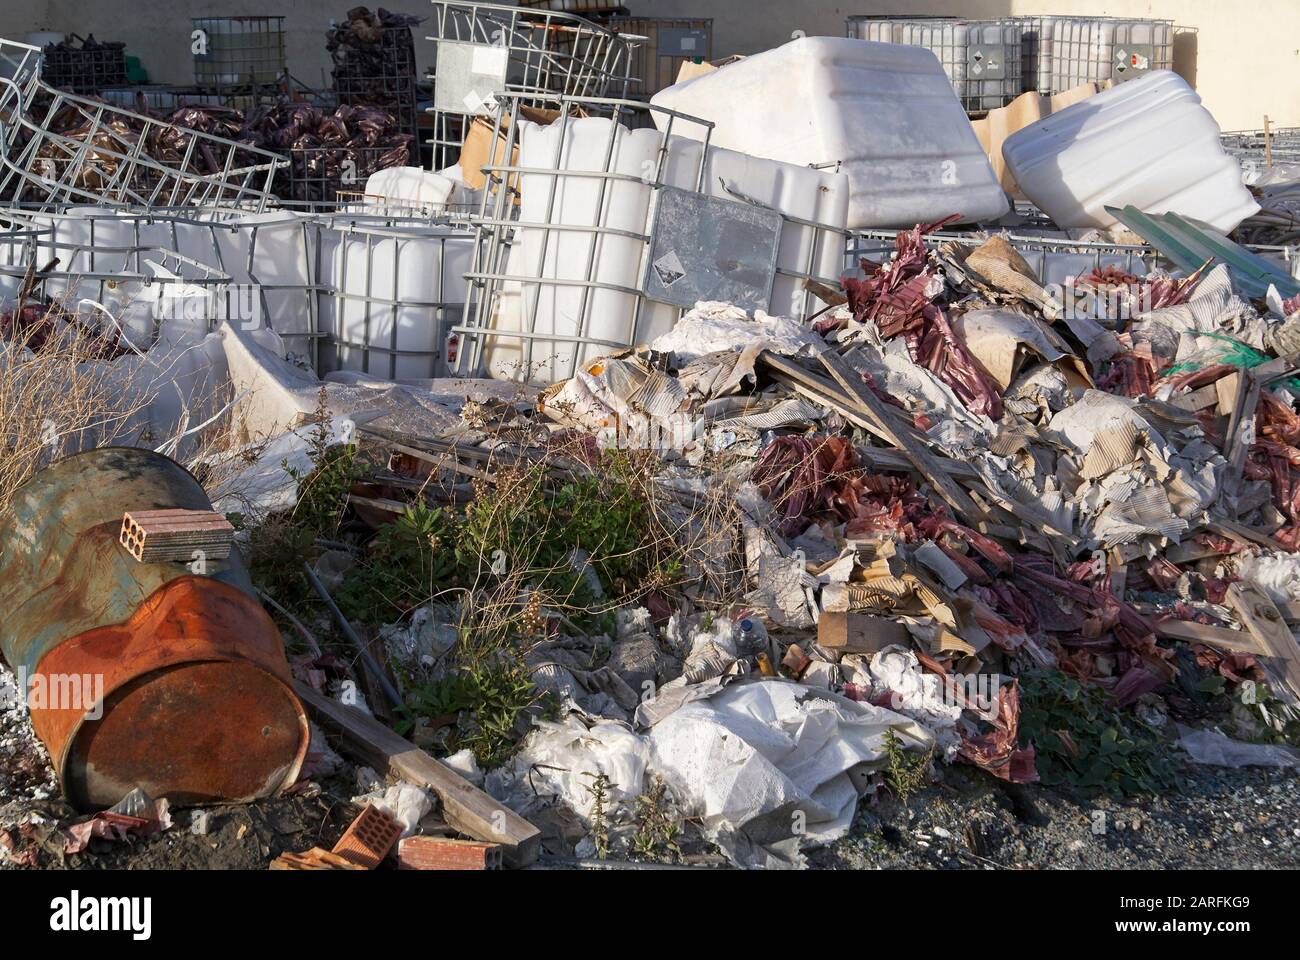 Basura y residuos industriales que contaminan el planeta. Foto de stock